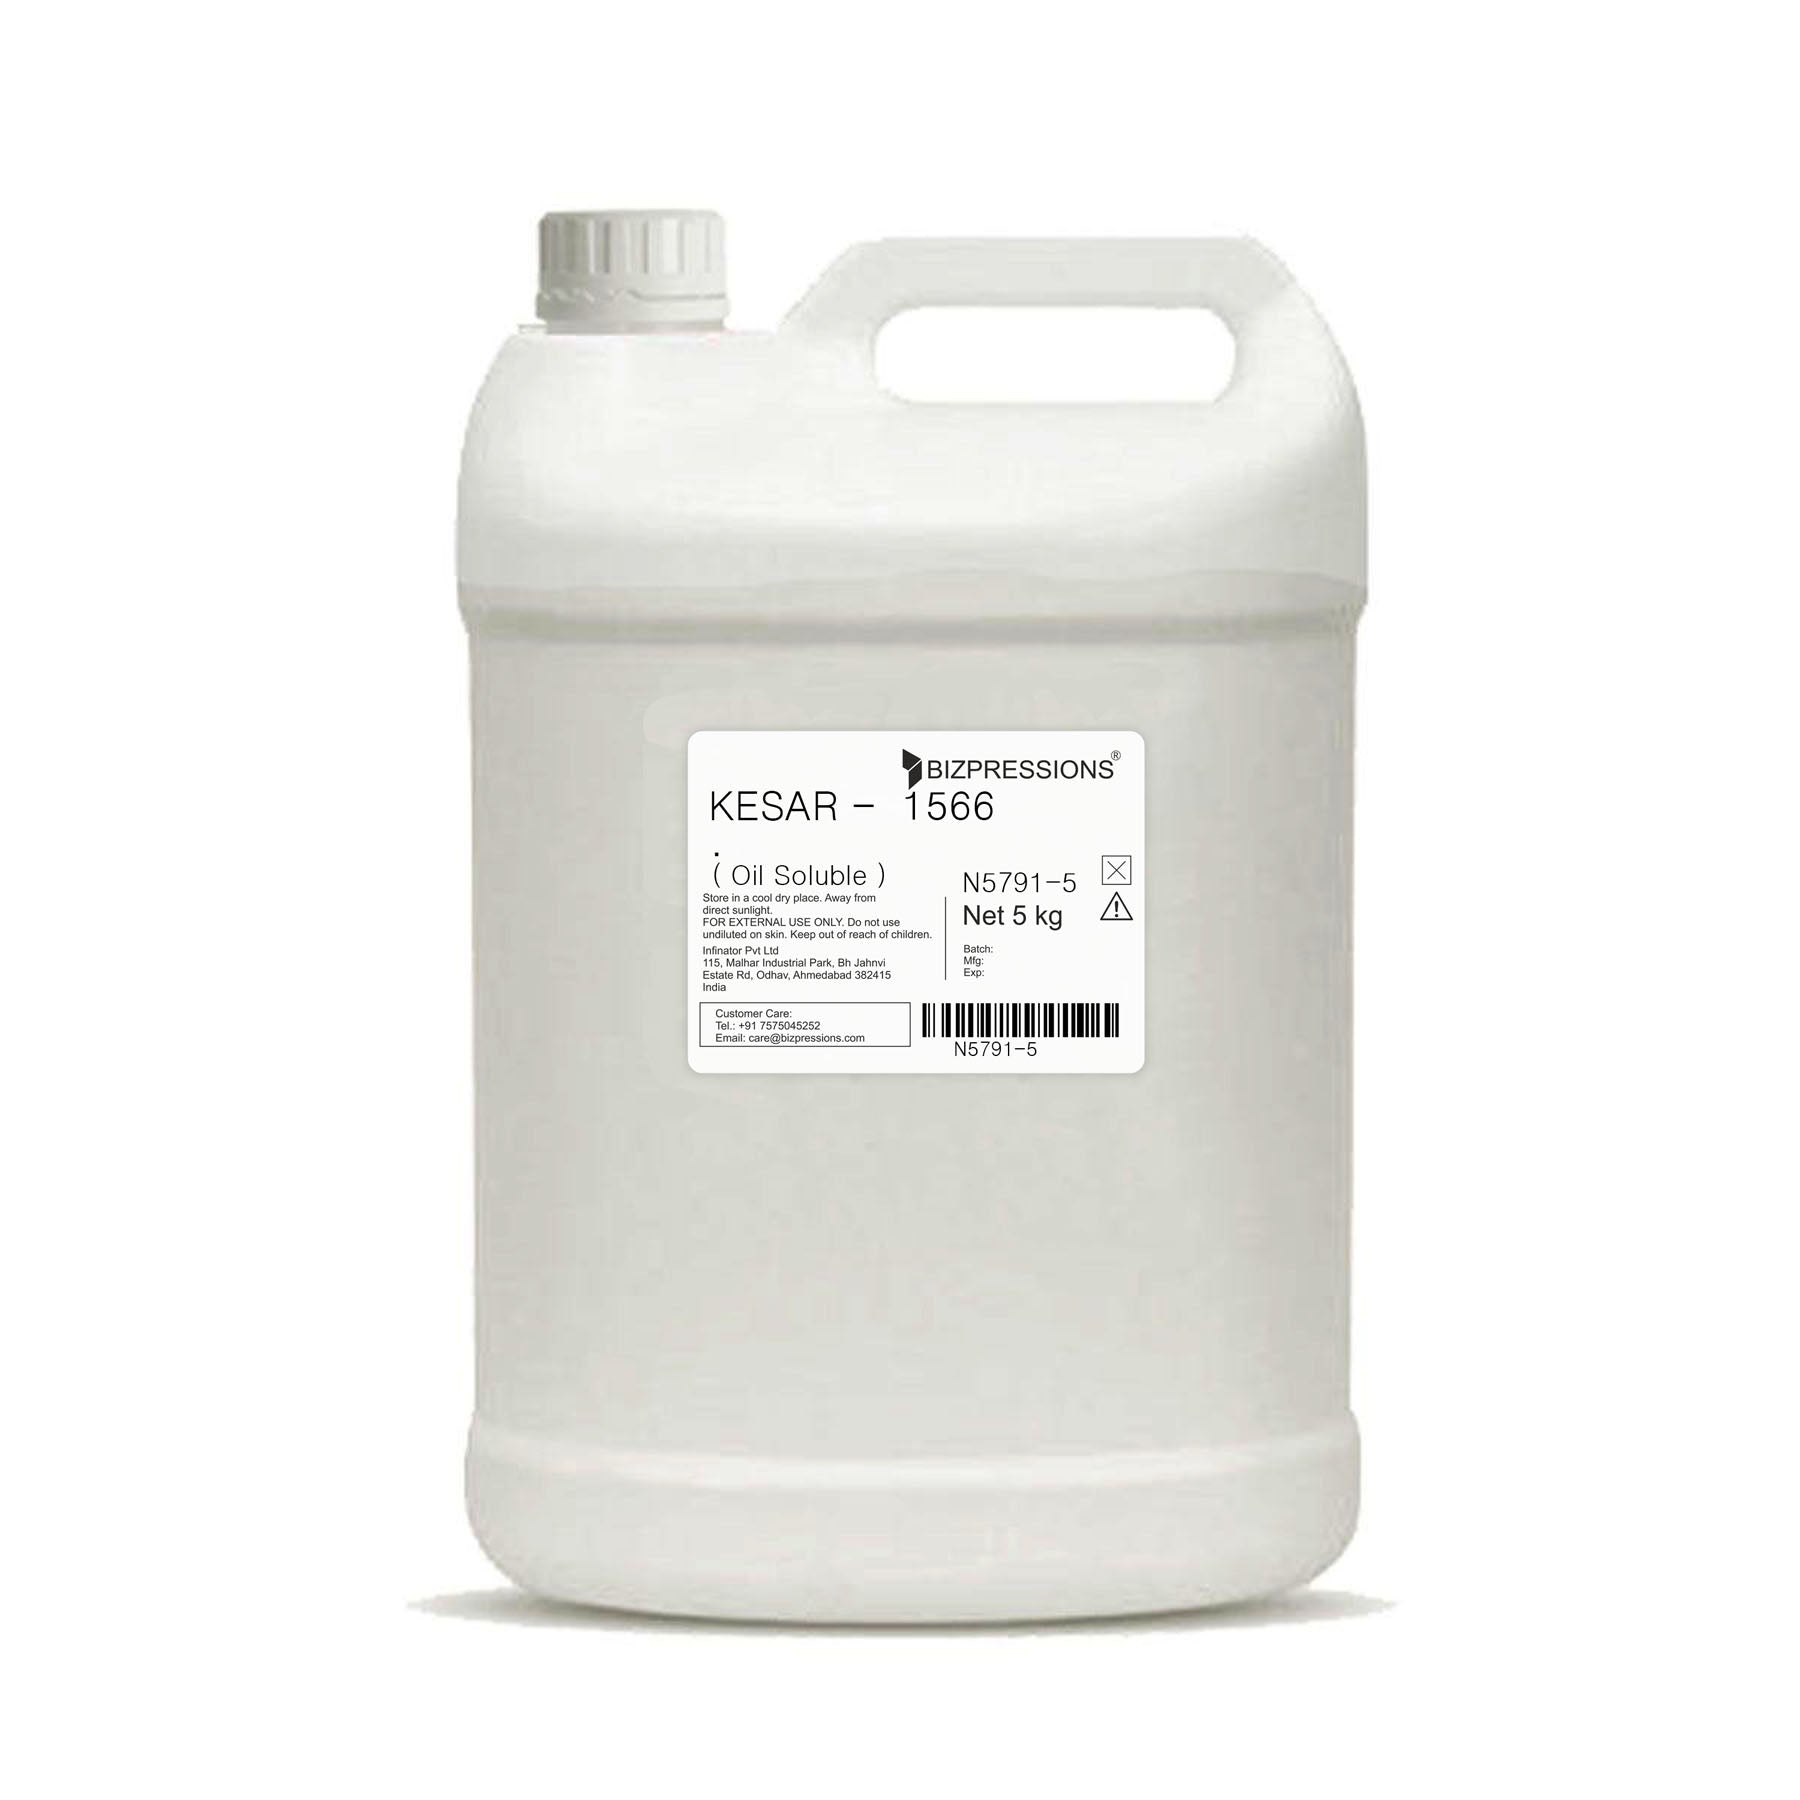 KESAR - 1566 - Fragrance ( Oil Soluble ) - 5 kg